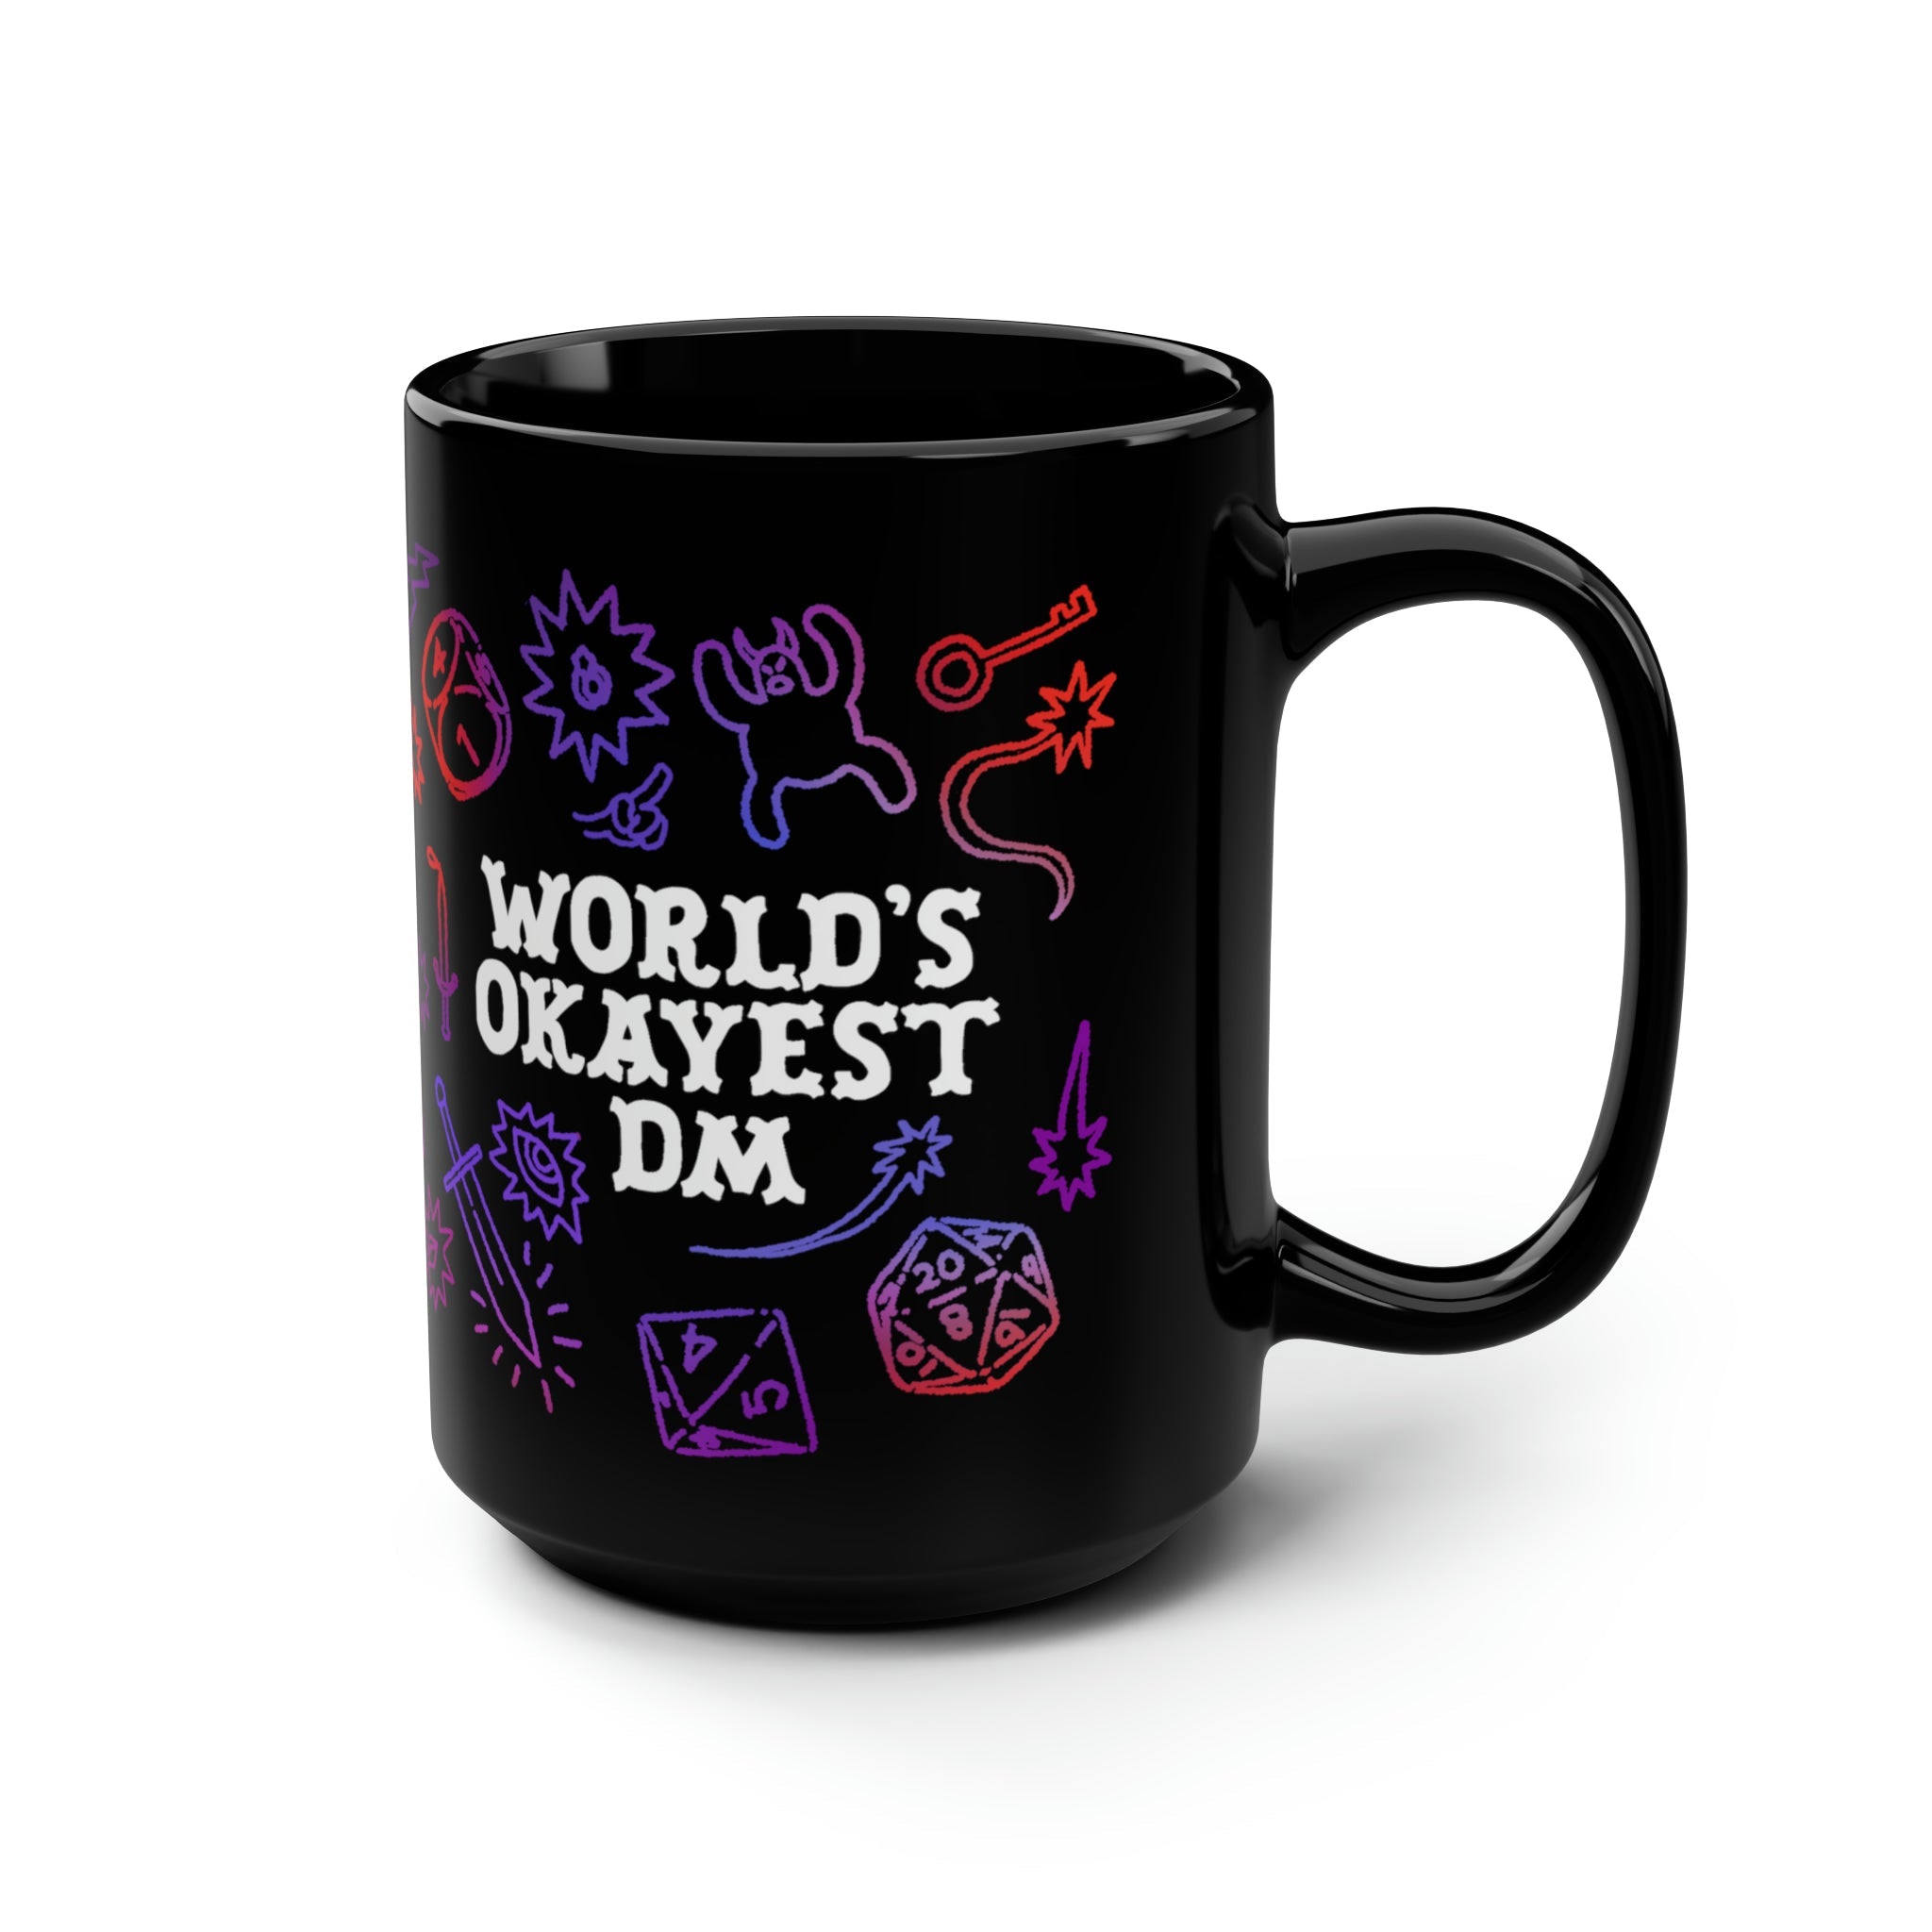 World's Okayest DM | Black Mug, 15oz - Mug - Ace of Gnomes - 14085665850143460231